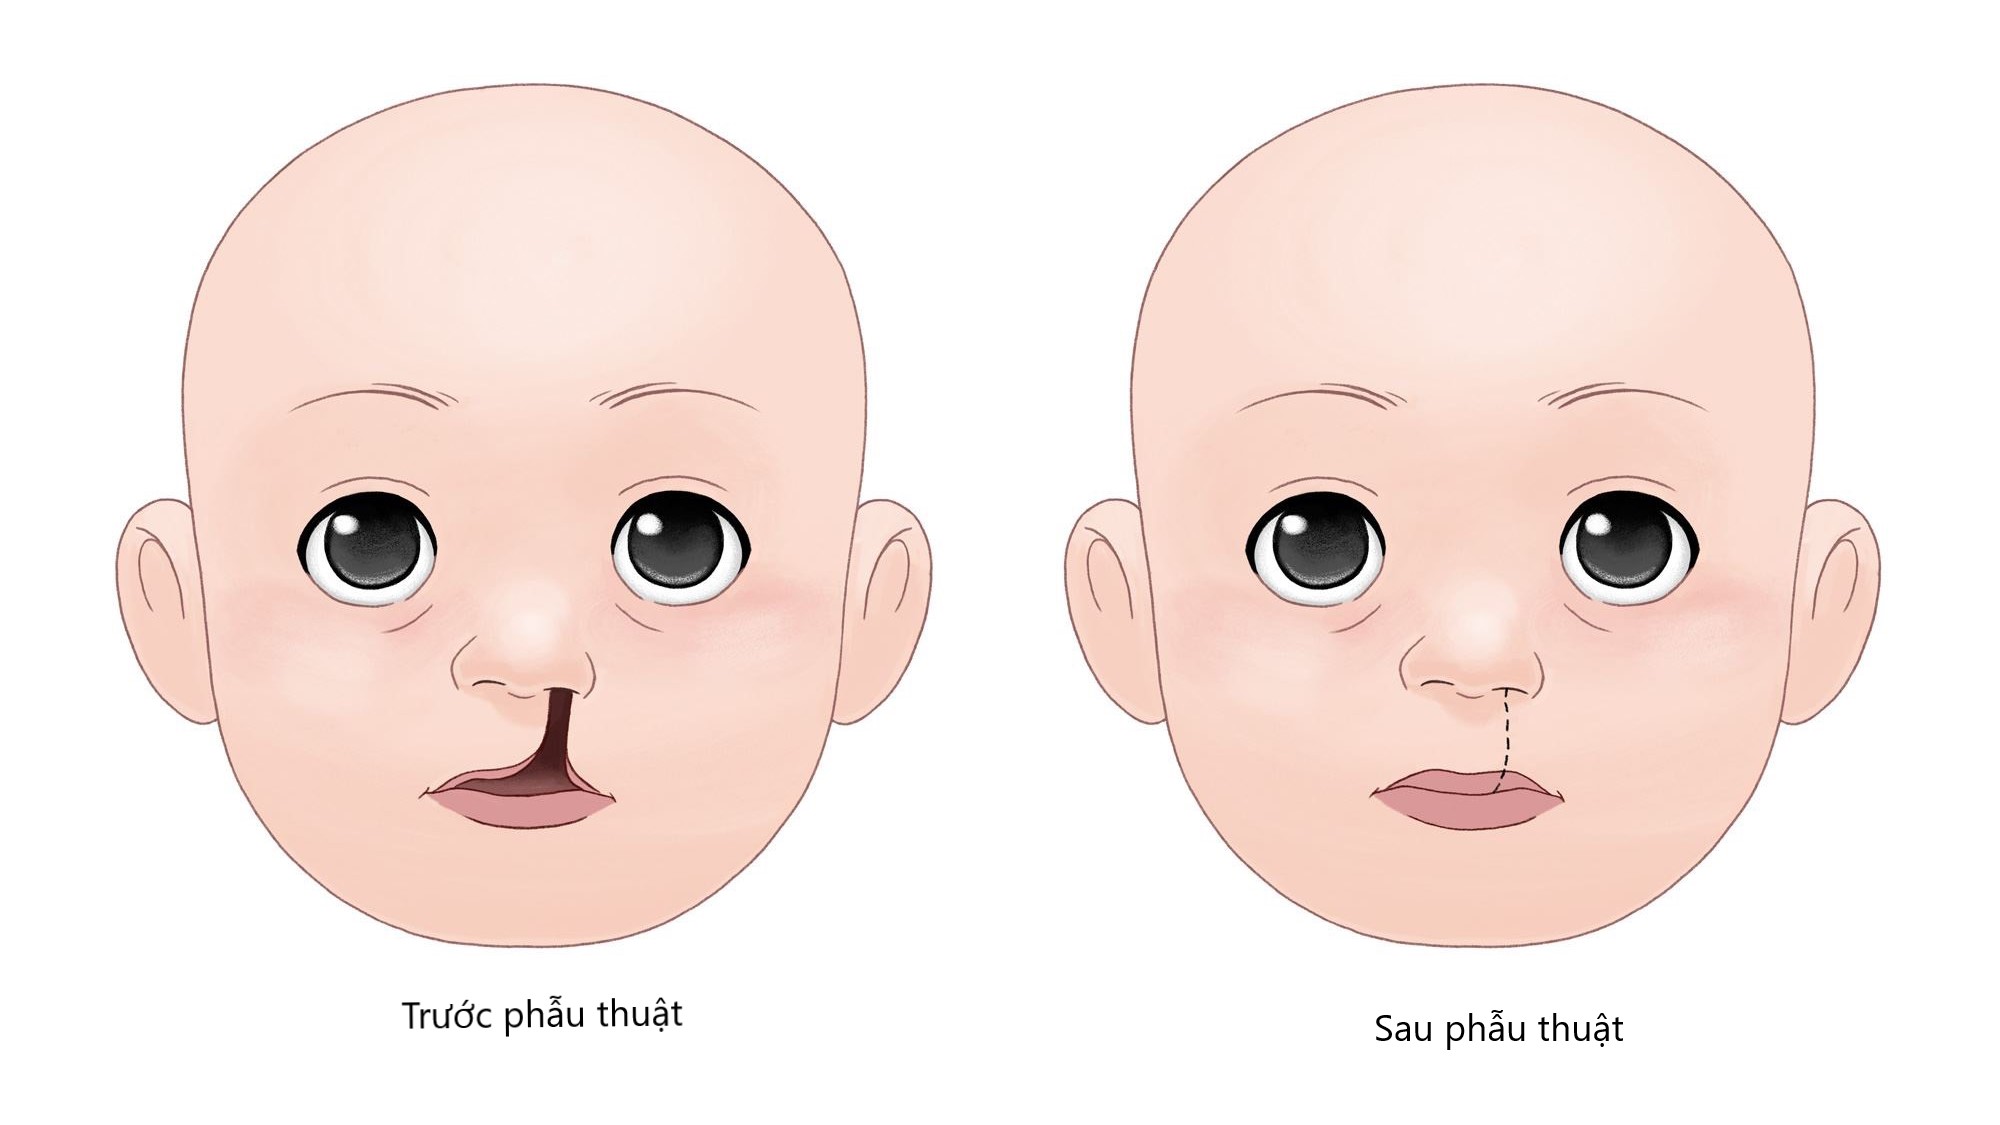 Phẫu thuật tạo hình sớm cho trẻ khe hở môi- vòm miệng ở Bệnh viện Trường Đại học Y Dược Huế